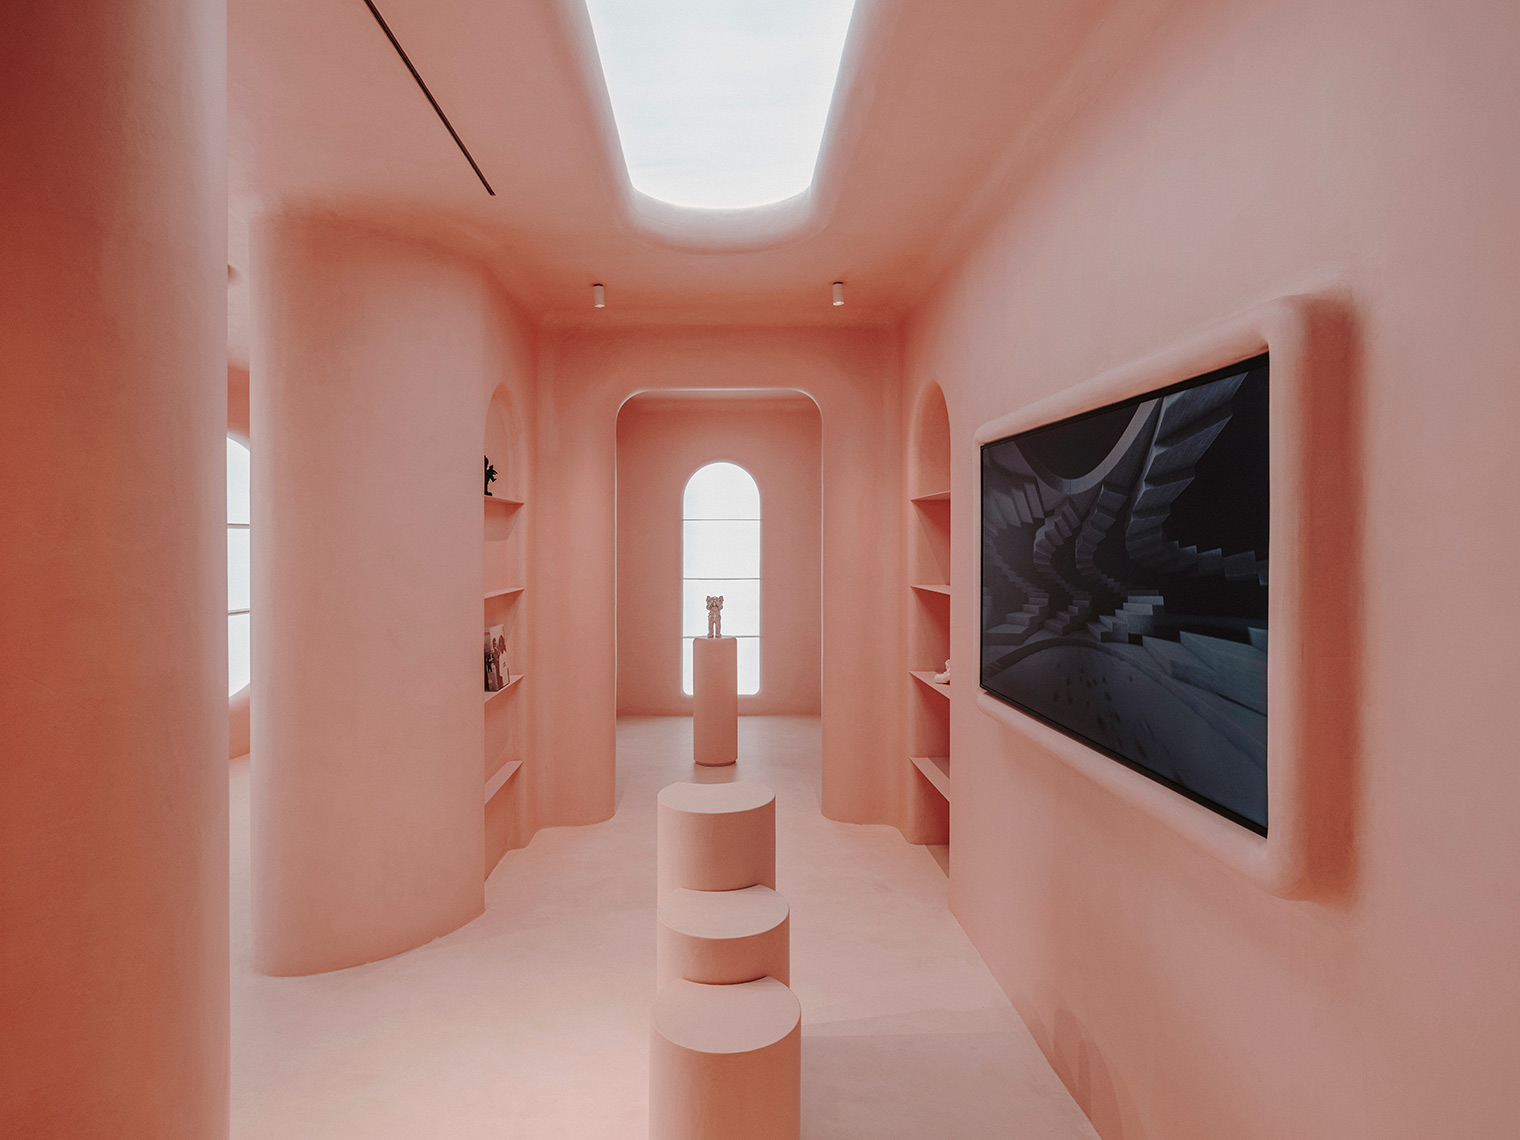 moco concept store barcelona, tienda rosa, galería de arte